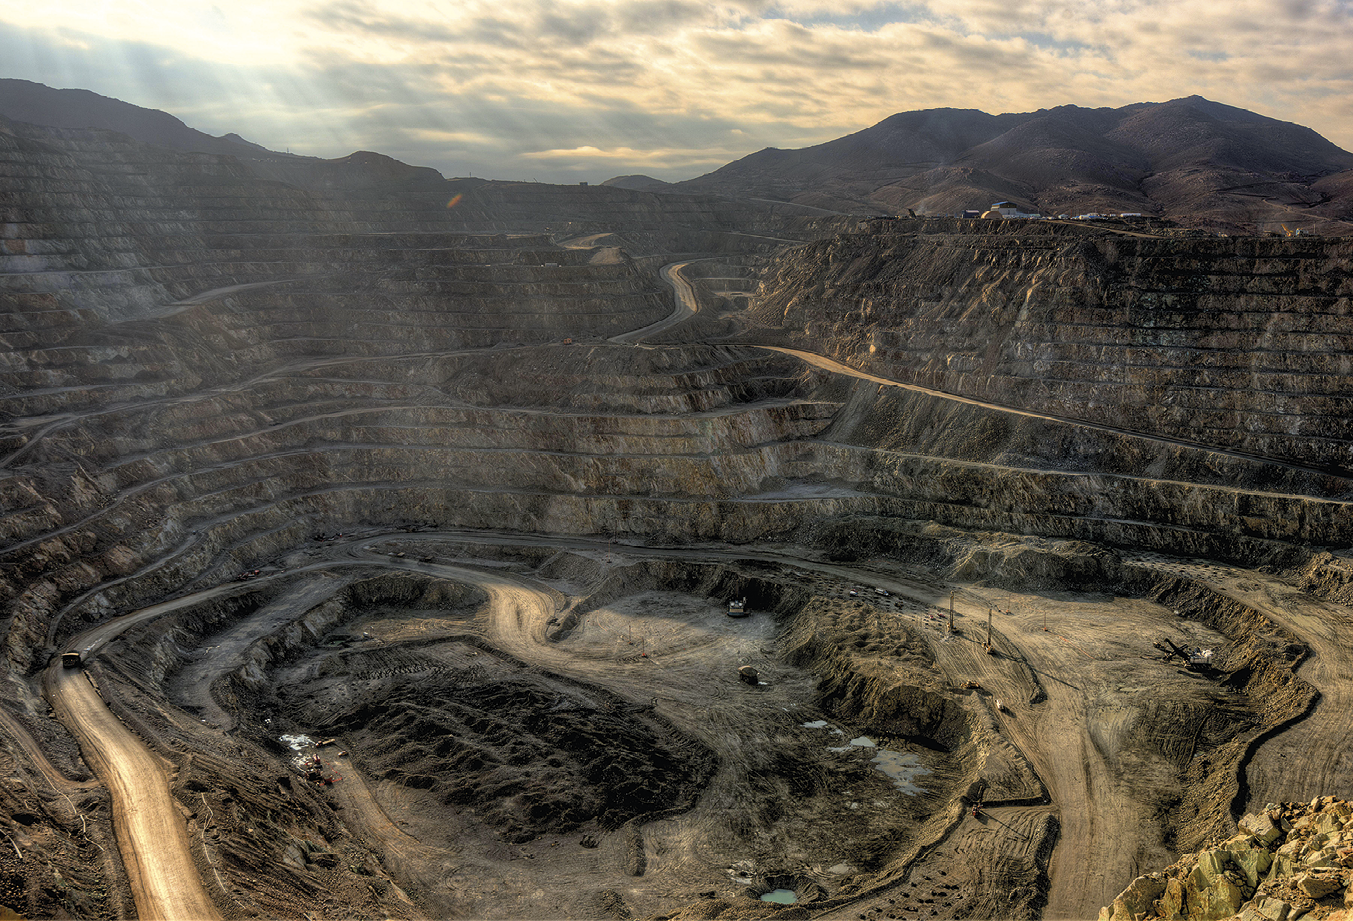 Fotografia. Vista de uma mina de cobre a céu aberto. A parte central da mina é a mais rebaixada, em tons de marrom e com estradas circulares de terra ao redor. Ao fundo, montanhas com vegetação.